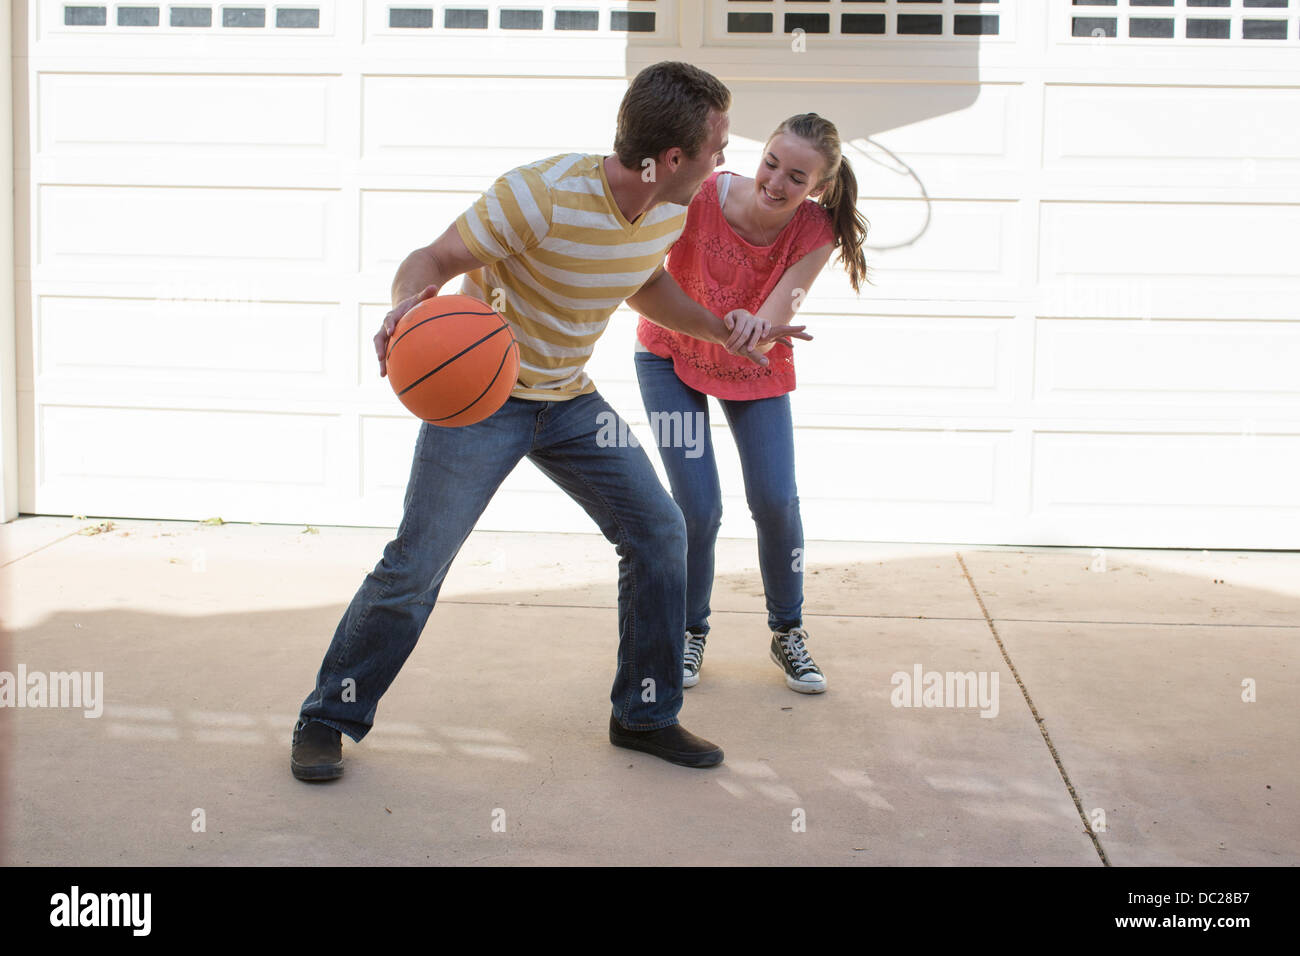 Brother and sister playing basketball Stock Photo - Alamy